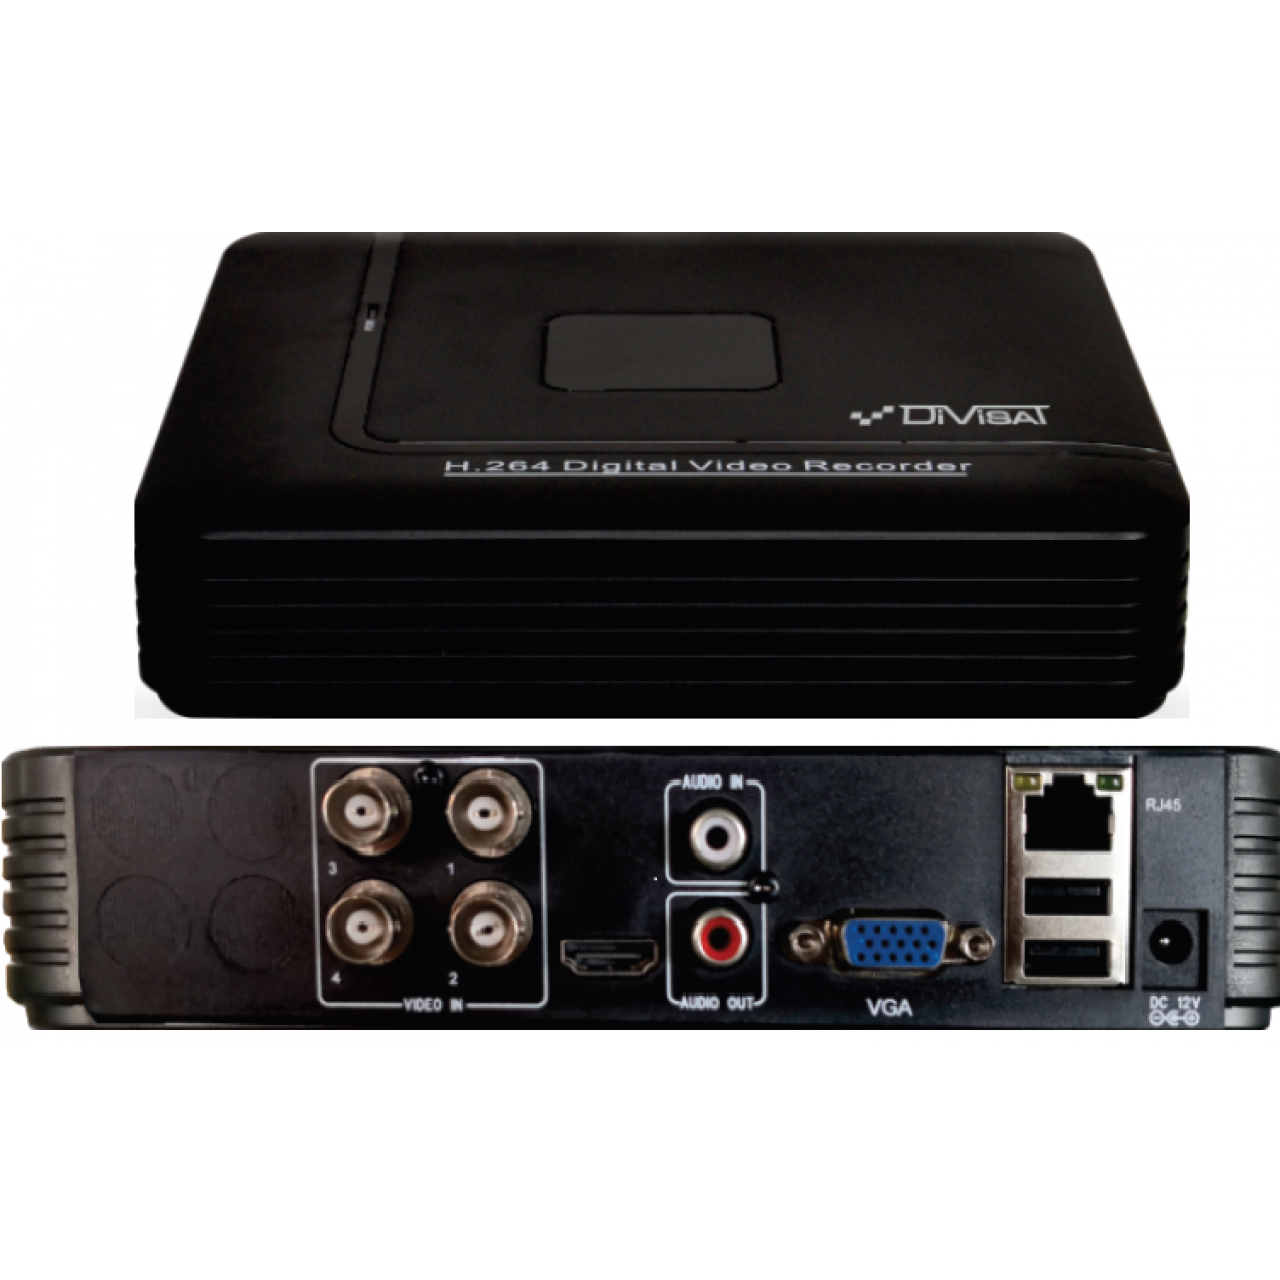 Гибридный 4-х канальный видеорегистратор DVR-4512P LV